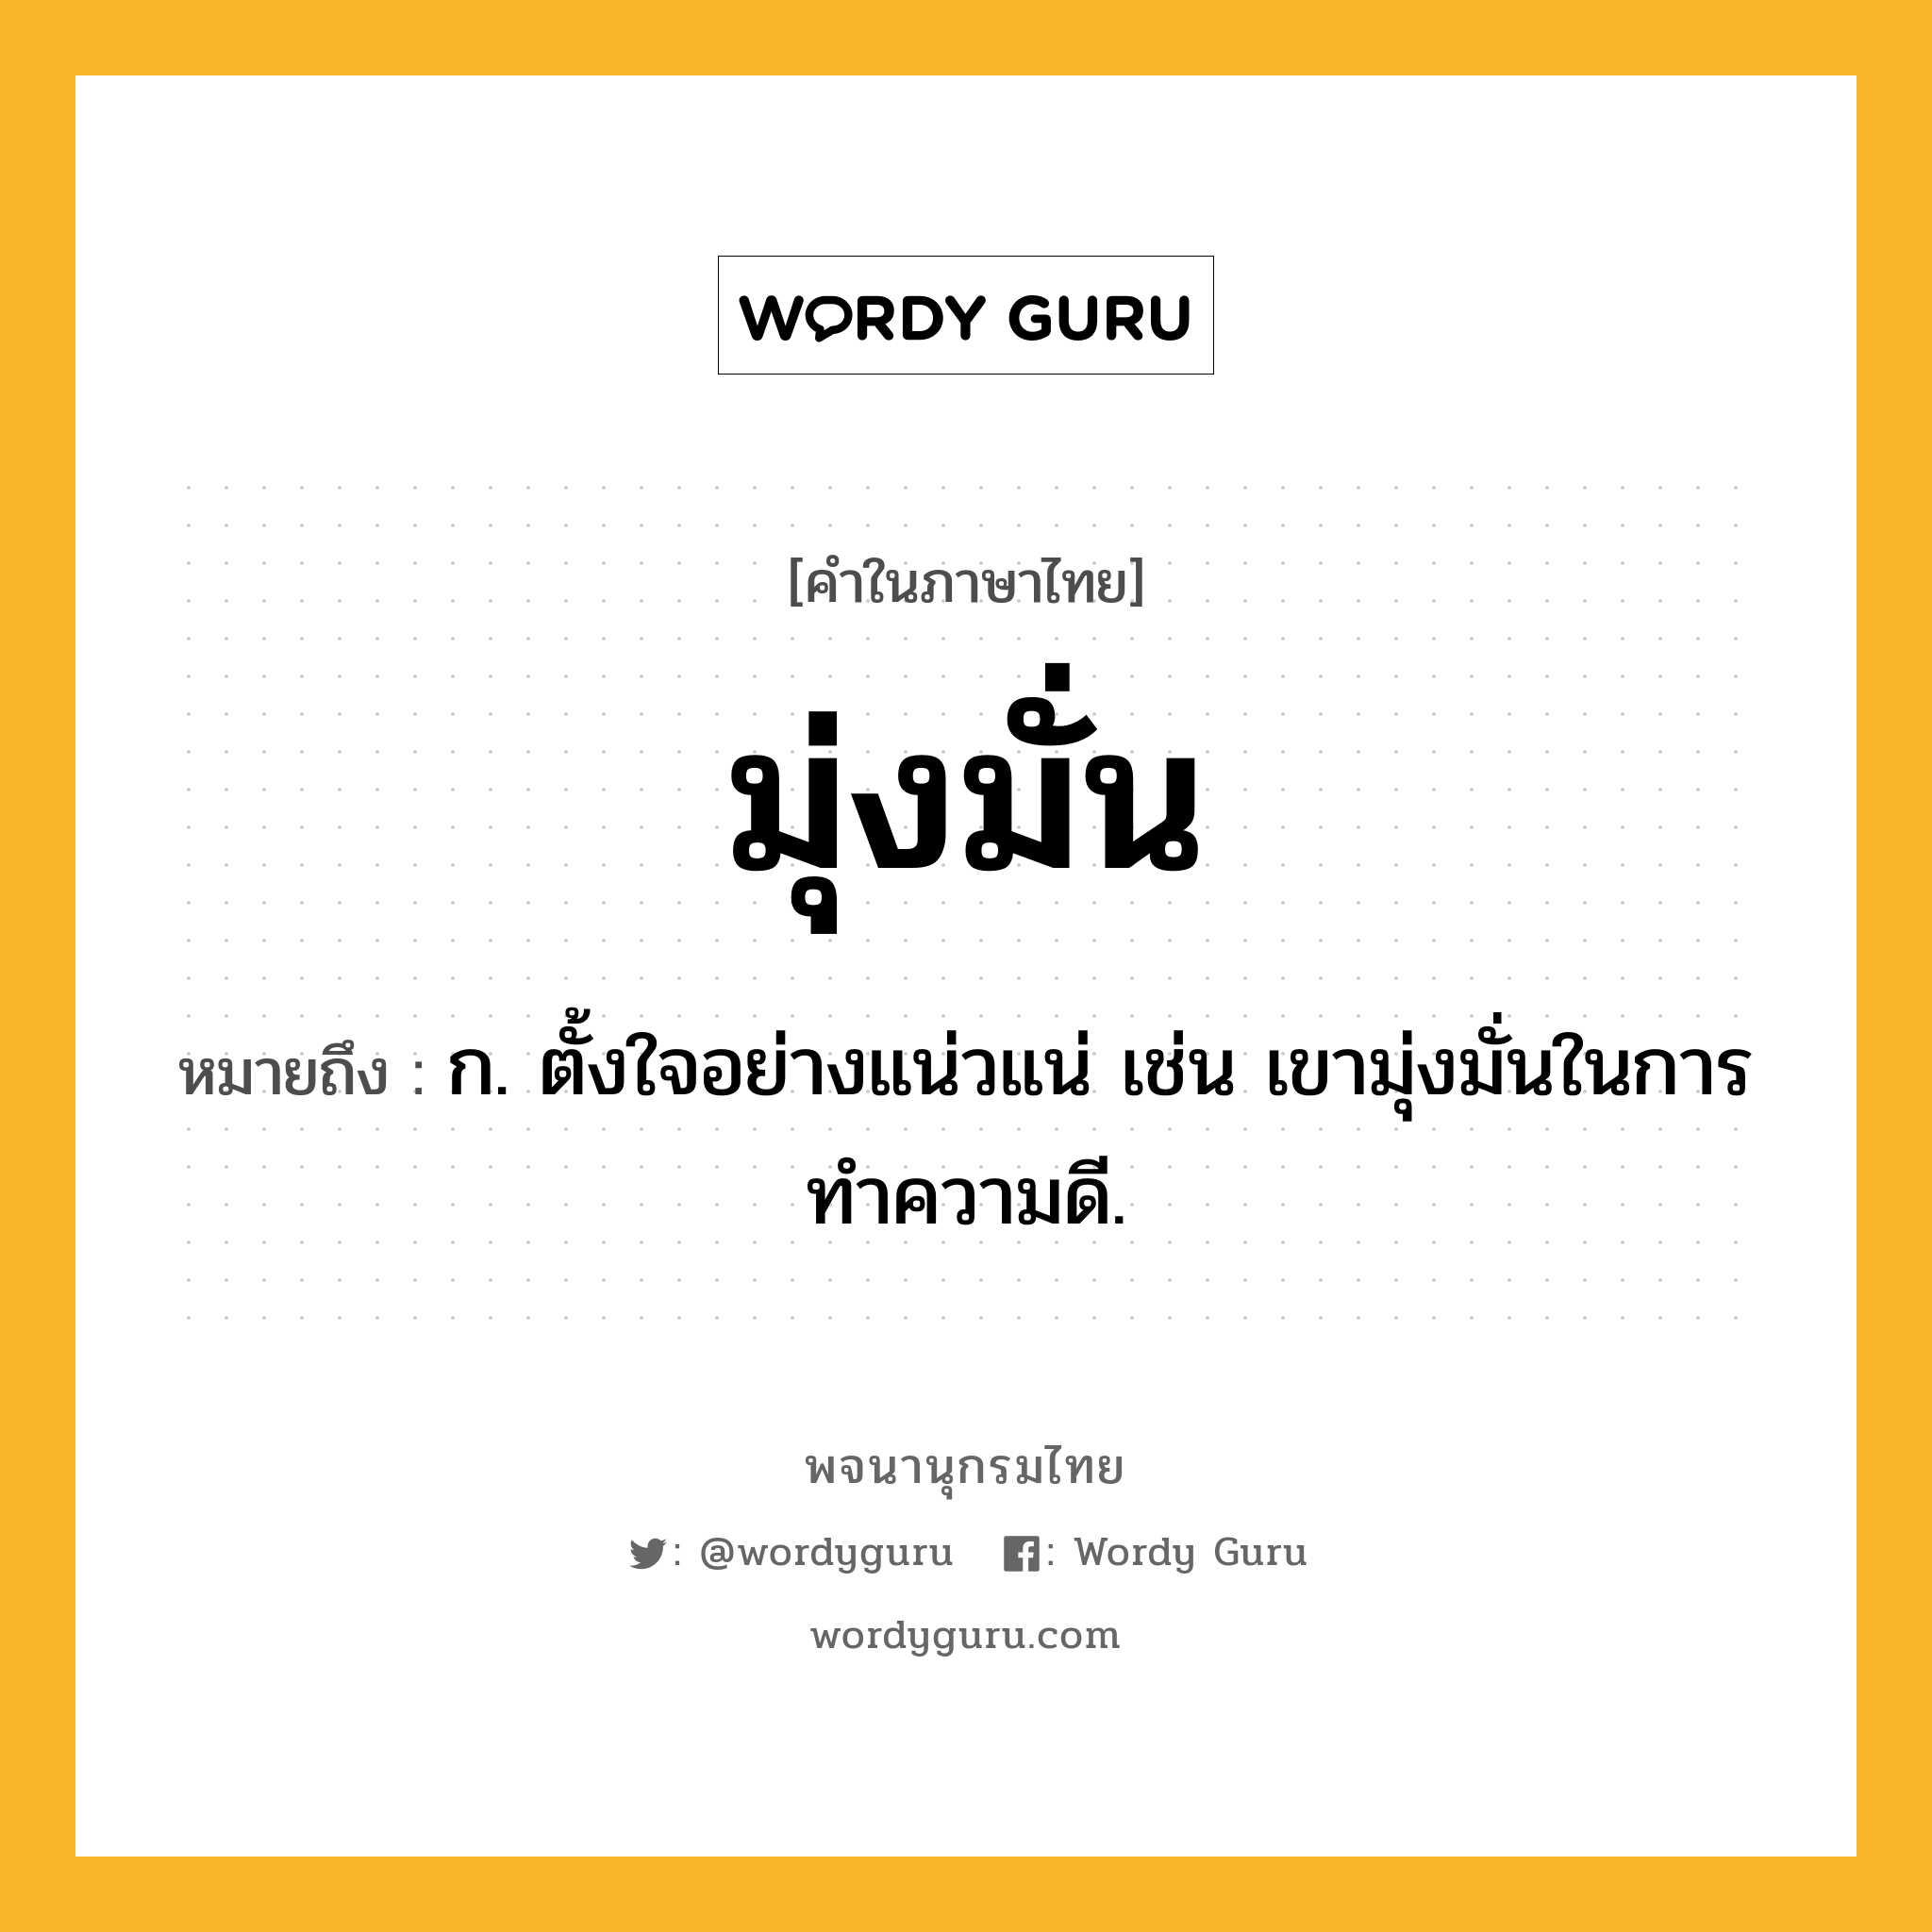 มุ่งมั่น ความหมาย หมายถึงอะไร?, คำในภาษาไทย มุ่งมั่น หมายถึง ก. ตั้งใจอย่างแน่วแน่ เช่น เขามุ่งมั่นในการทำความดี.